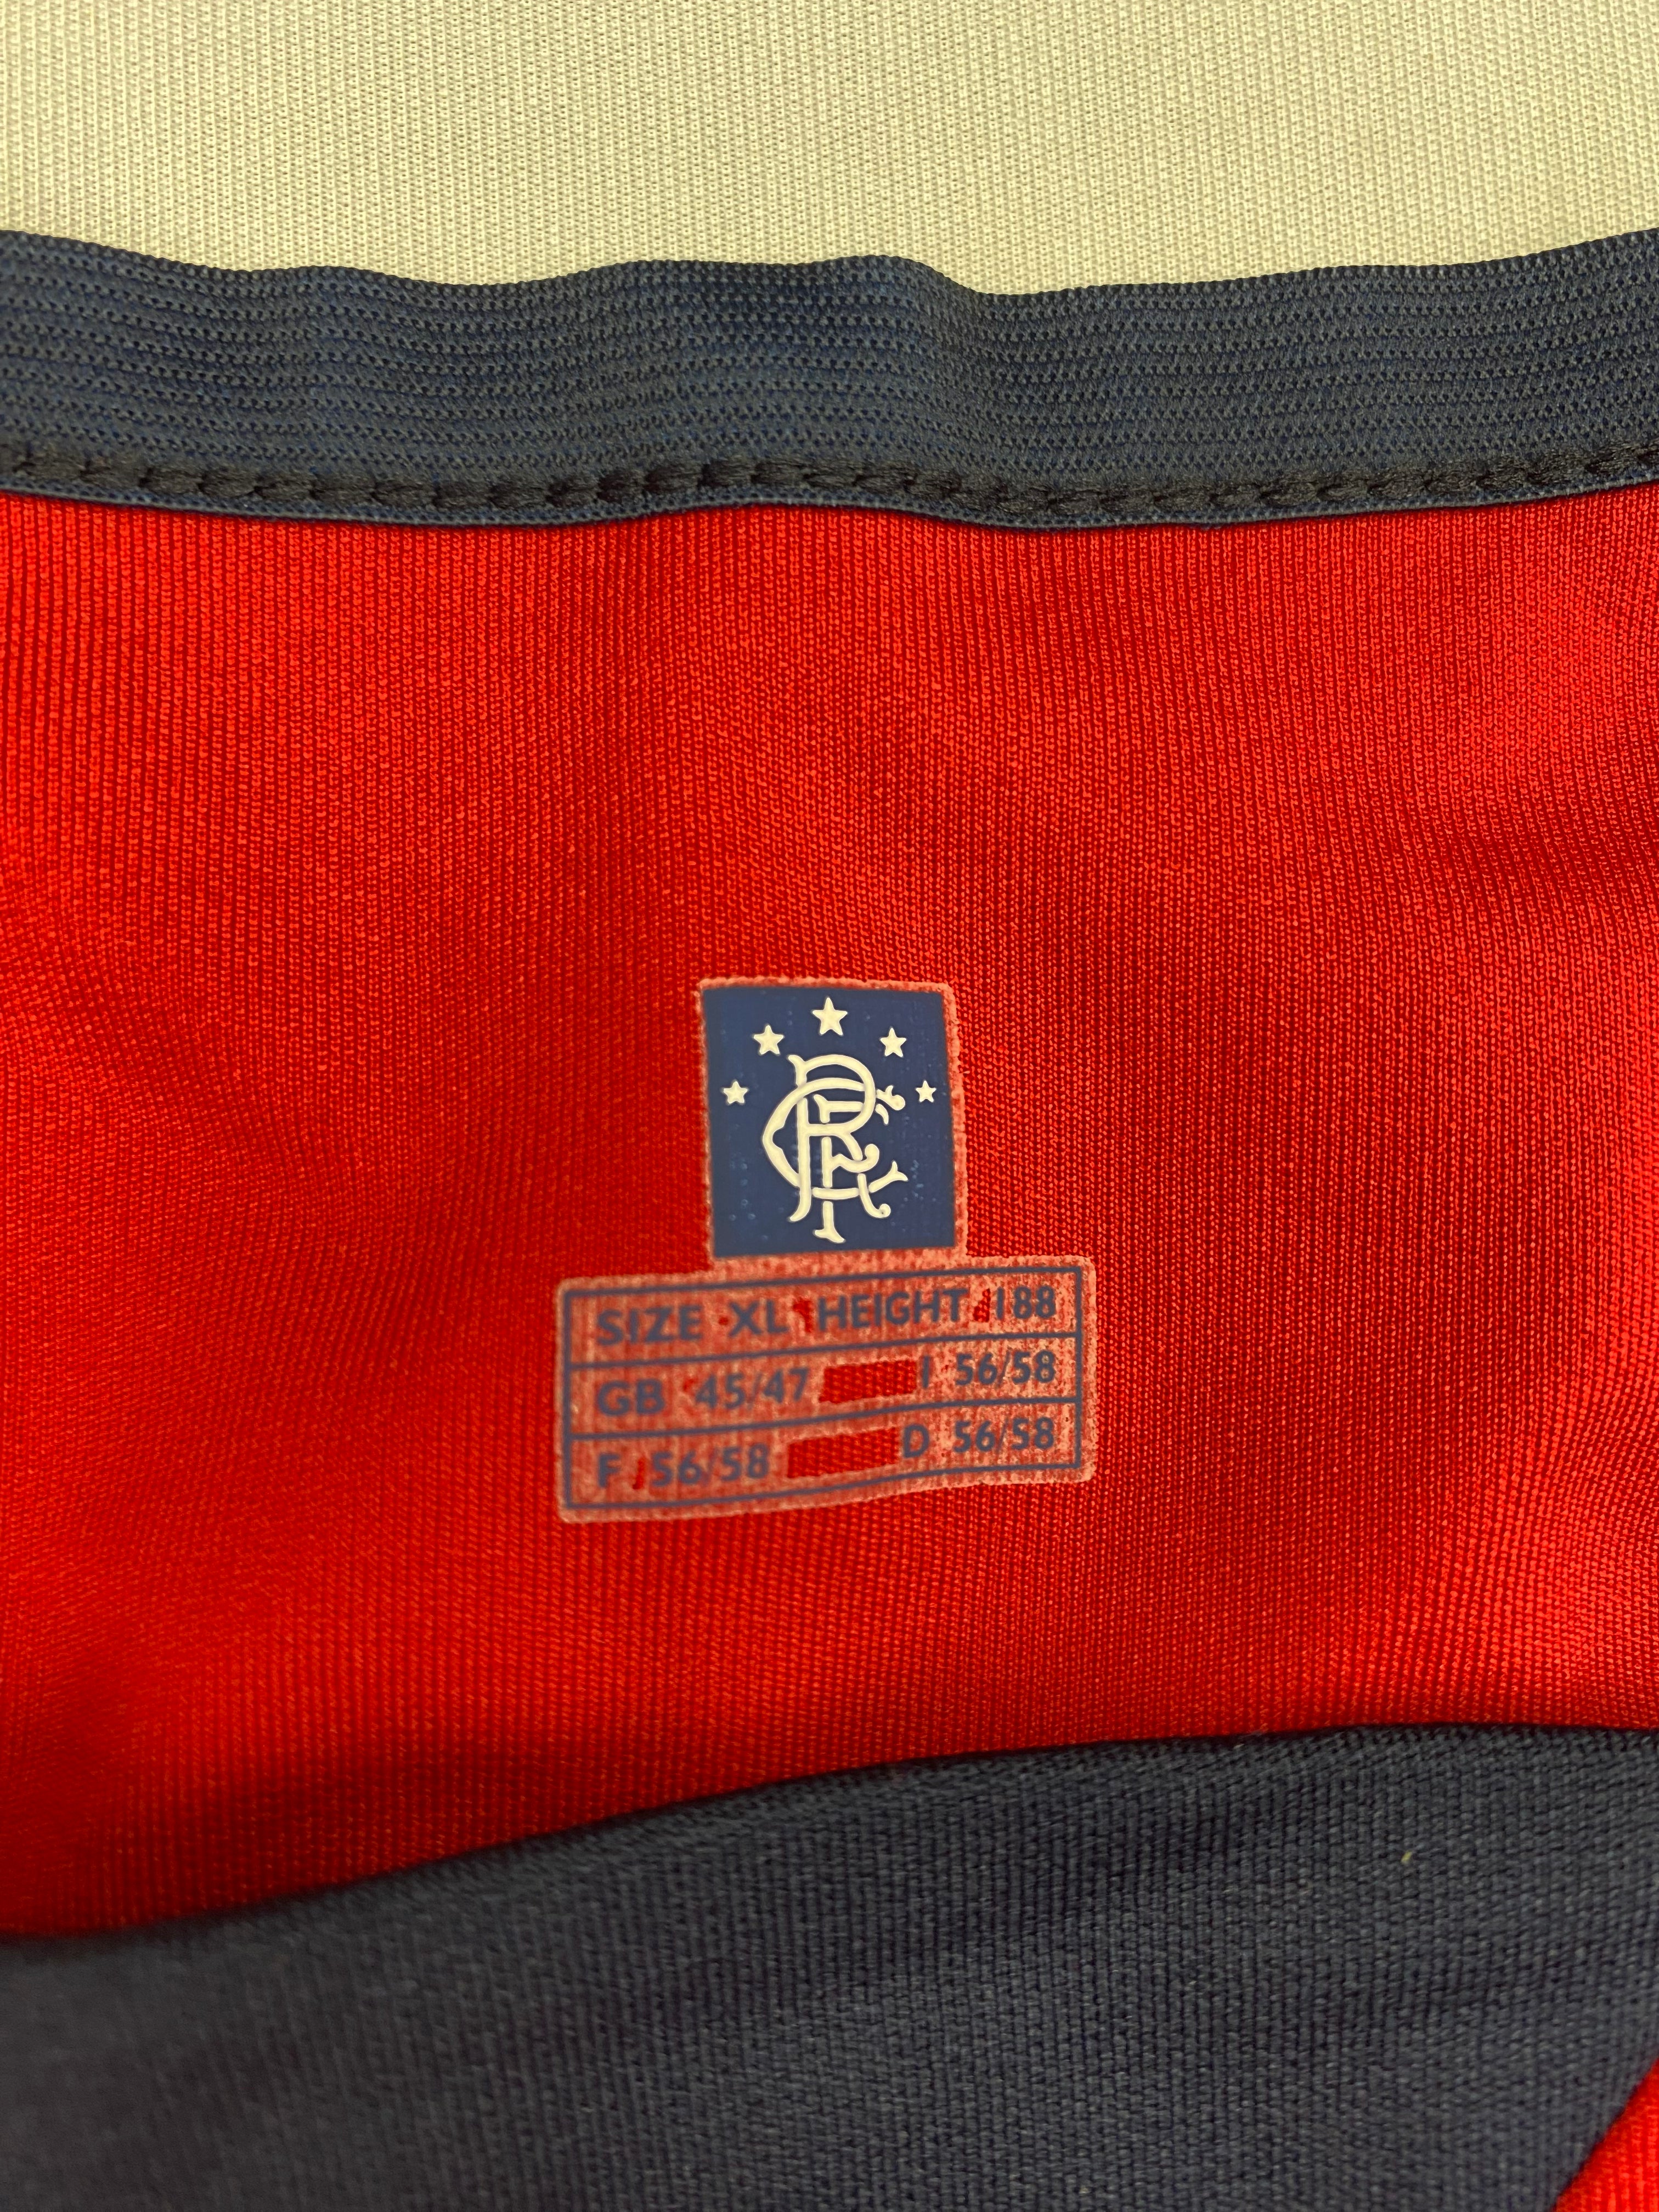 Troisième maillot des Rangers 2004/05 (XL) 9/10